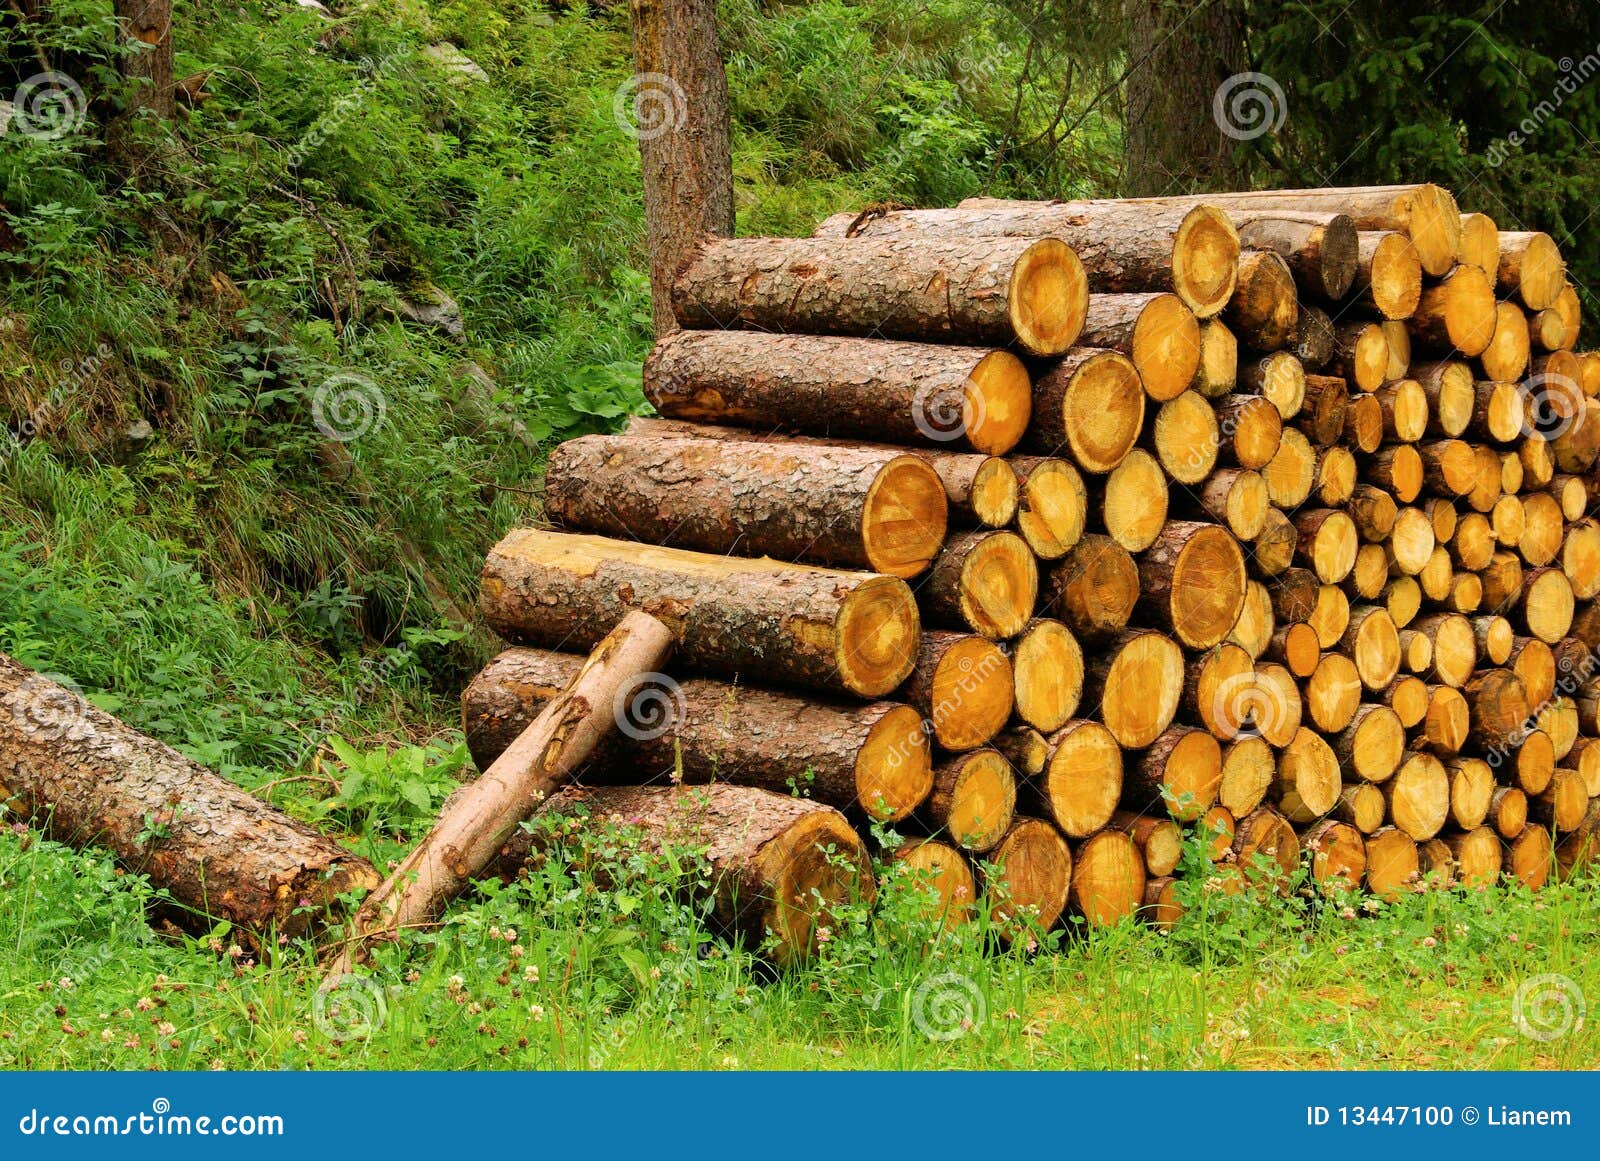 stack-wood-13447100.jpg